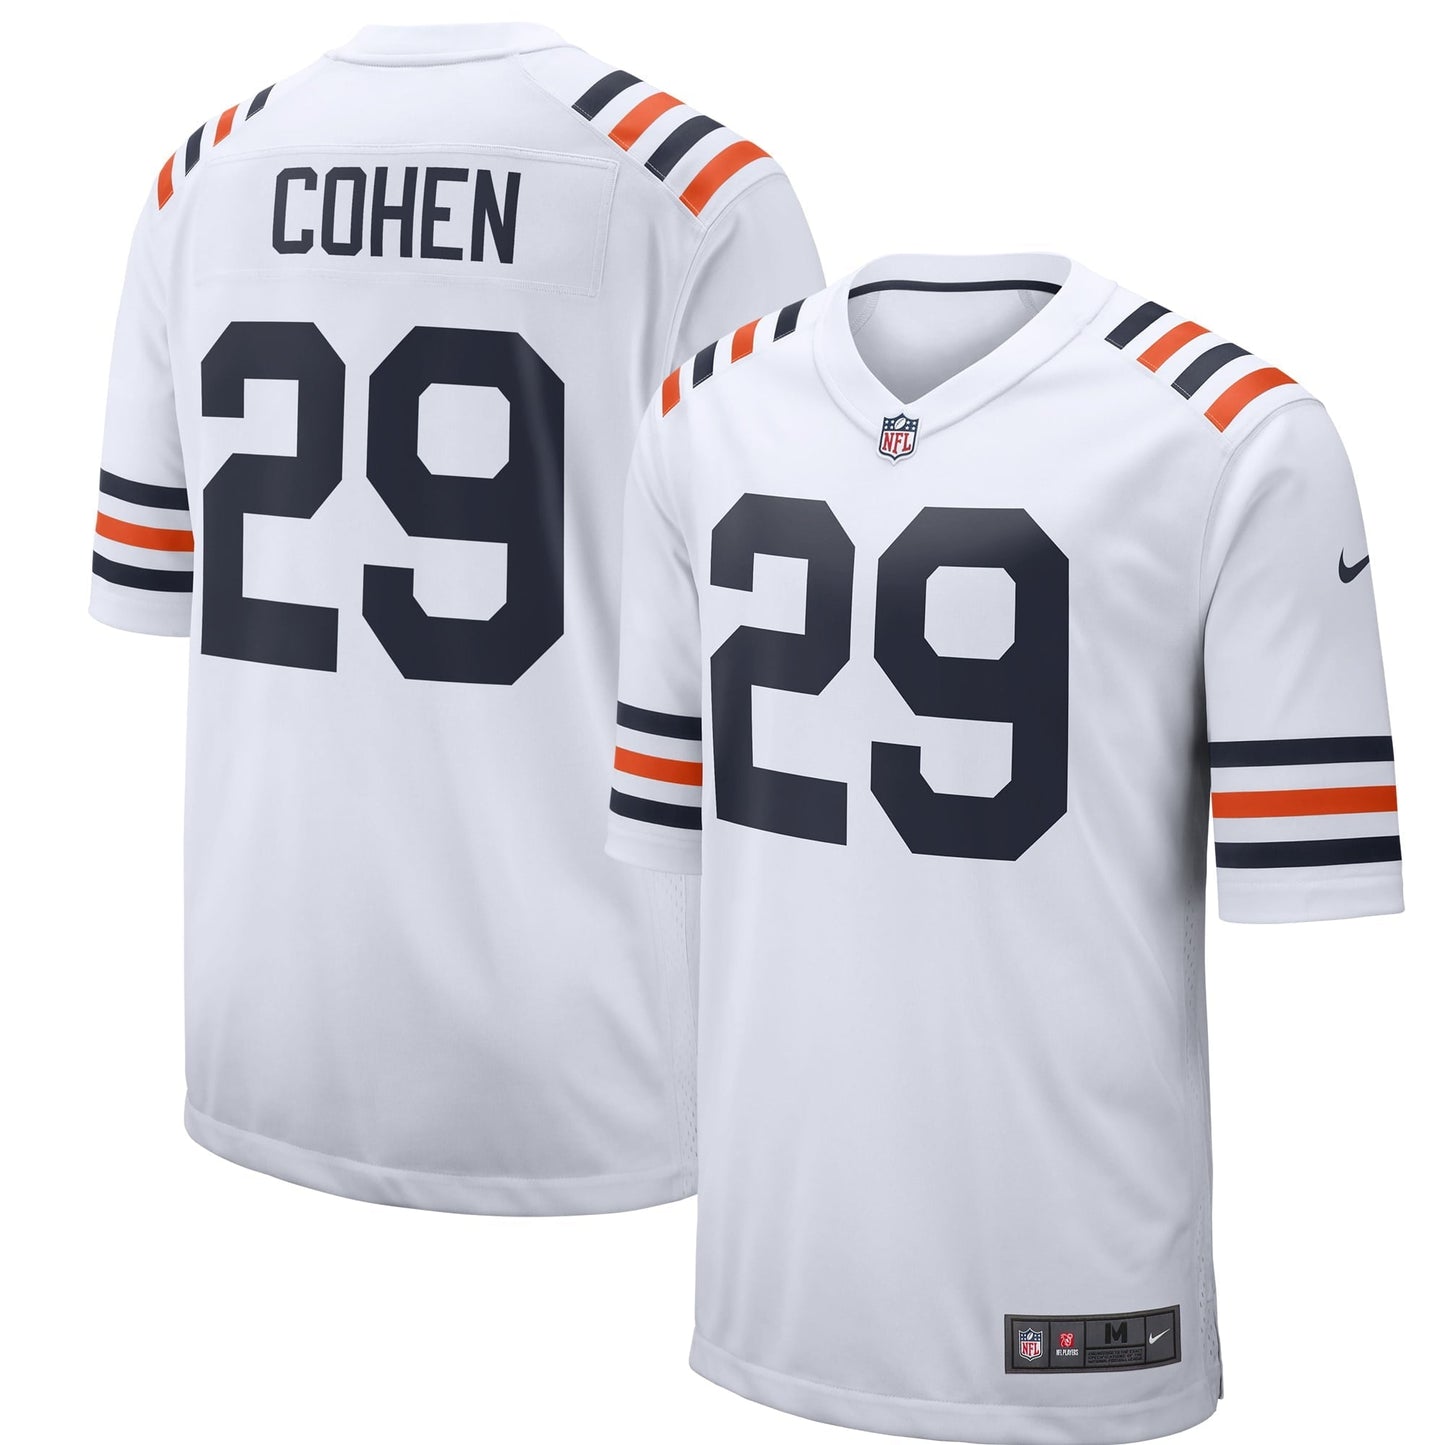 Men's Nike Tarik Cohen White Chicago Bears 2019 Alternate Classic Game Jersey